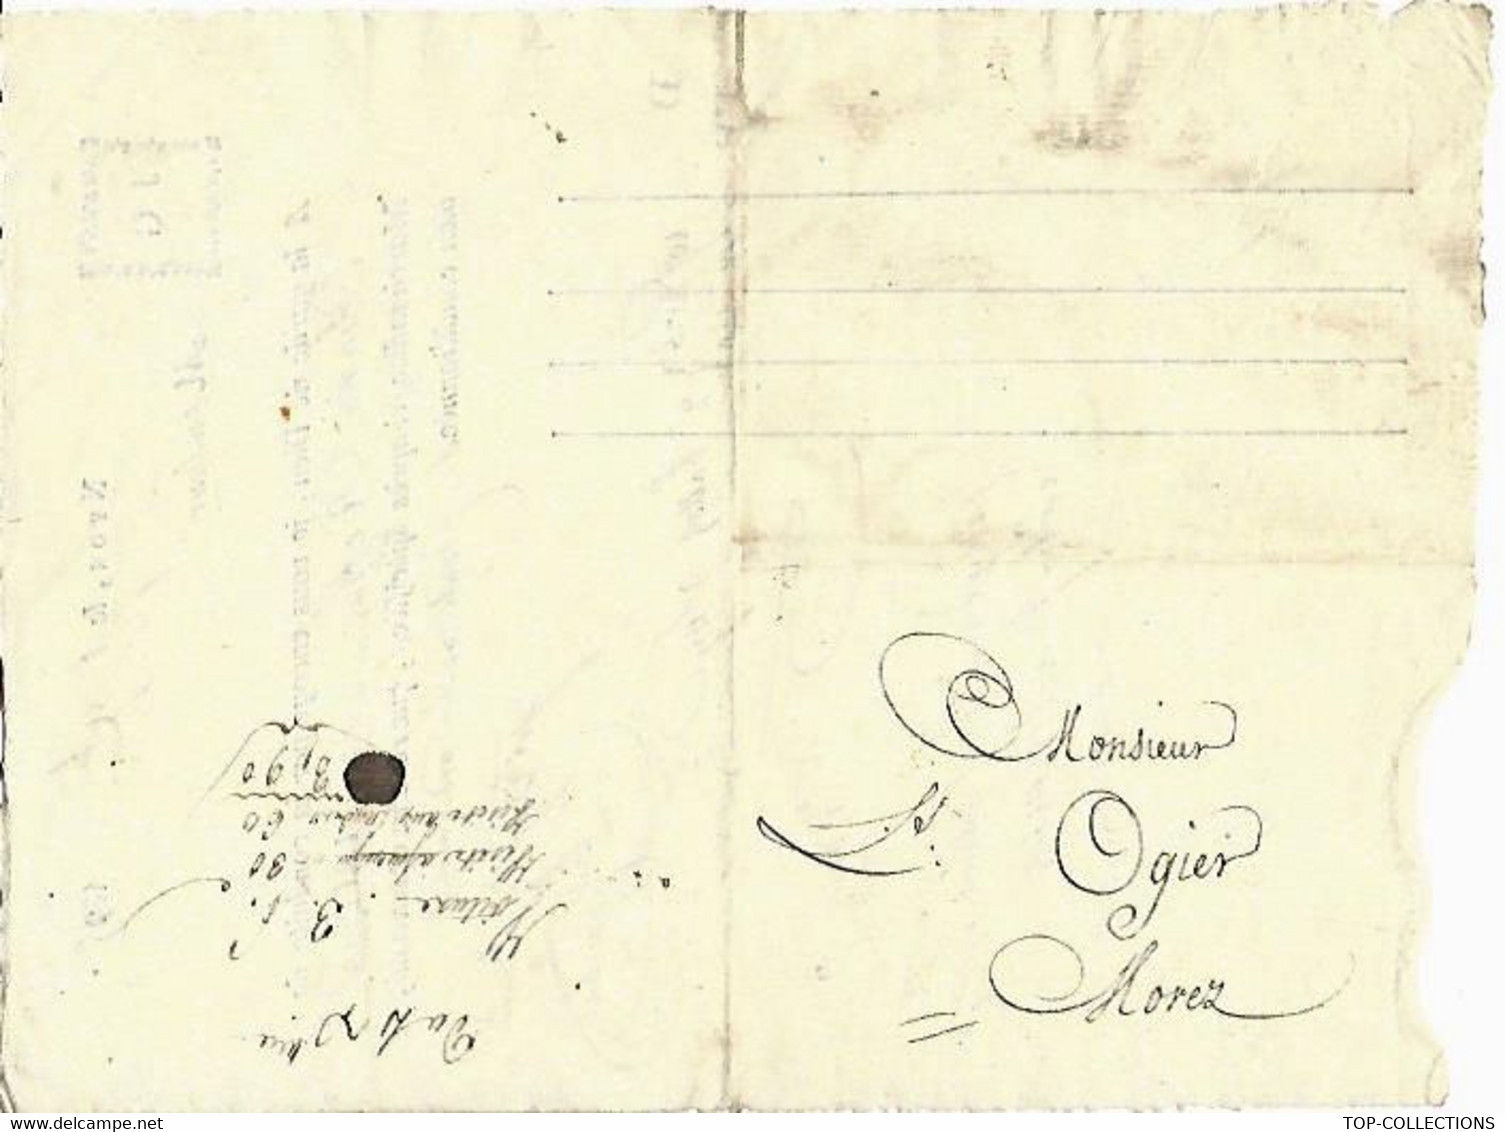 1815 Jacques Galliard à Nyon SUISSE Lettre De Voiture Roulage Transport Ballots De Soye Soie => Louis Ogier à Morez Jura - Svizzera